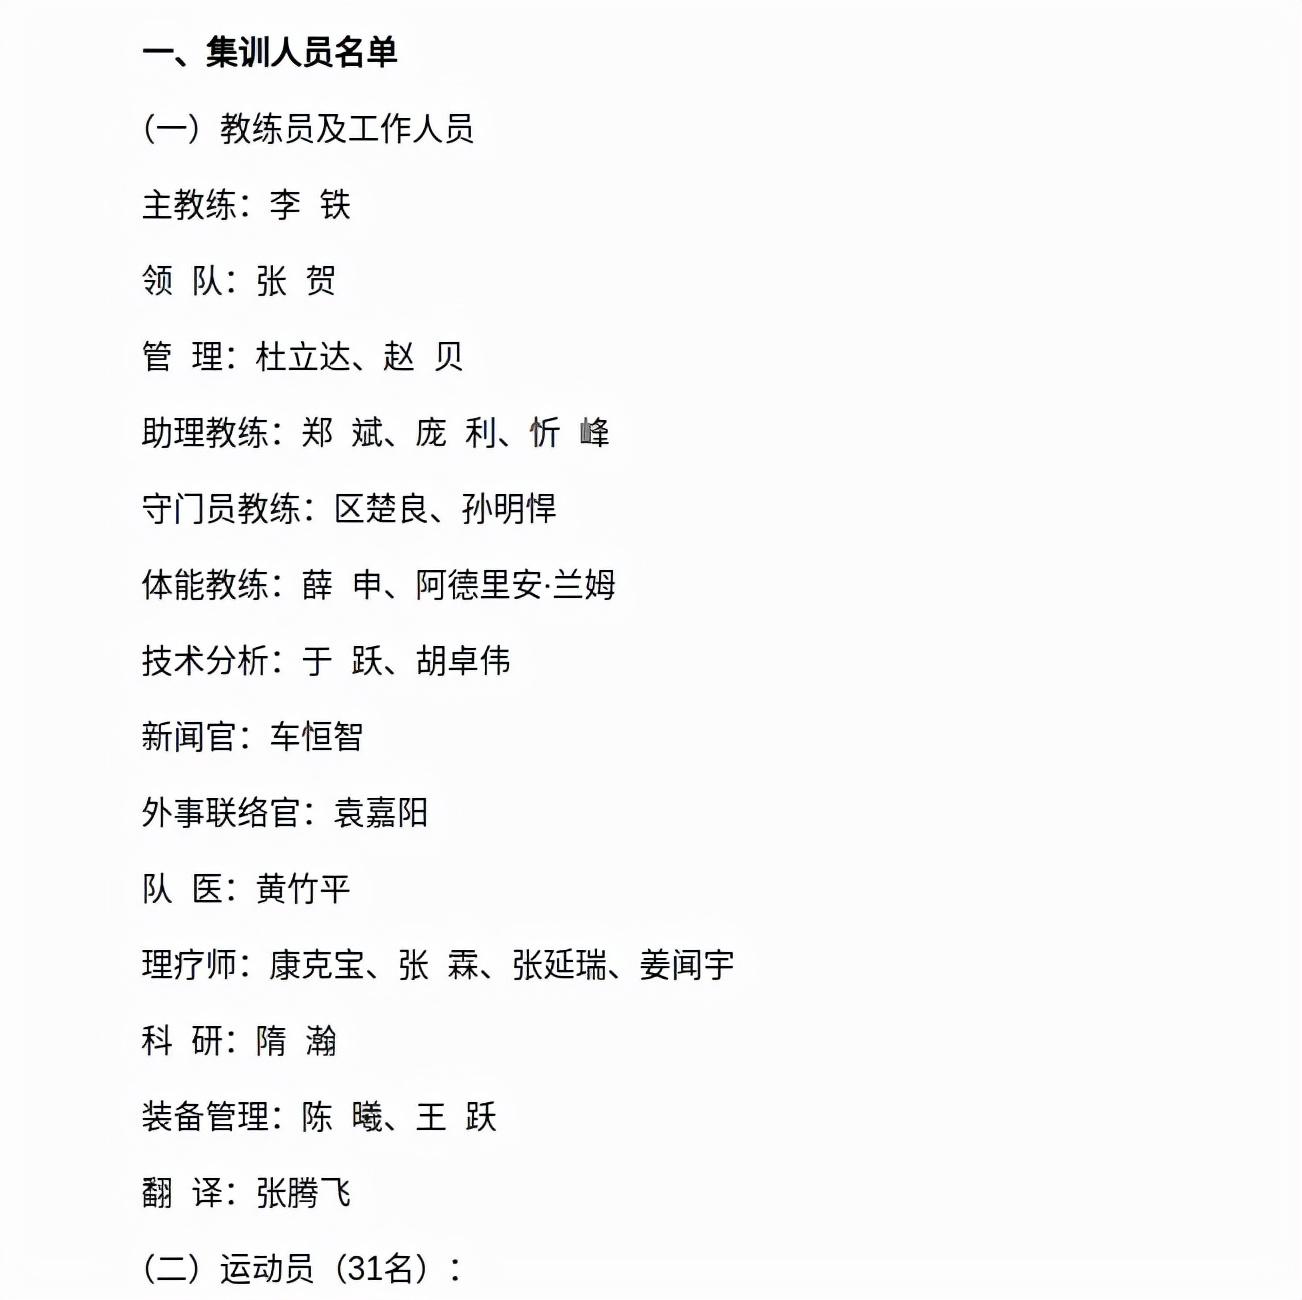 中国男足的集训名单，亮点在教练组，有肉大家一起吃